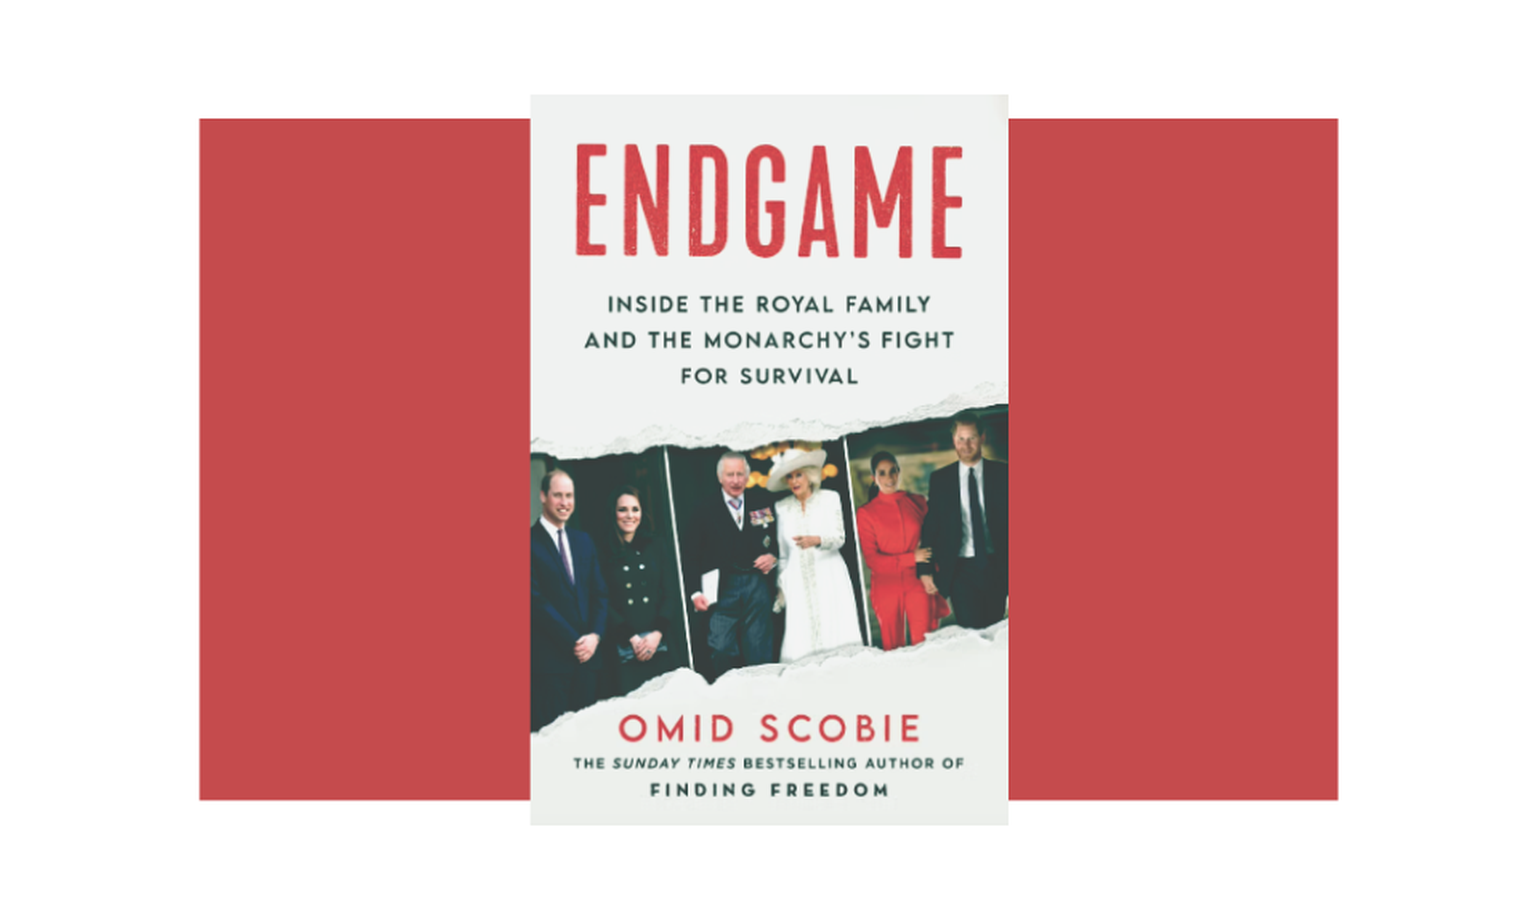 Le nouveau livre d'Omid Scobie consacré à la monarchie, Fin de règne, a provoqué un véritable tollé et des réactions très virulentes.